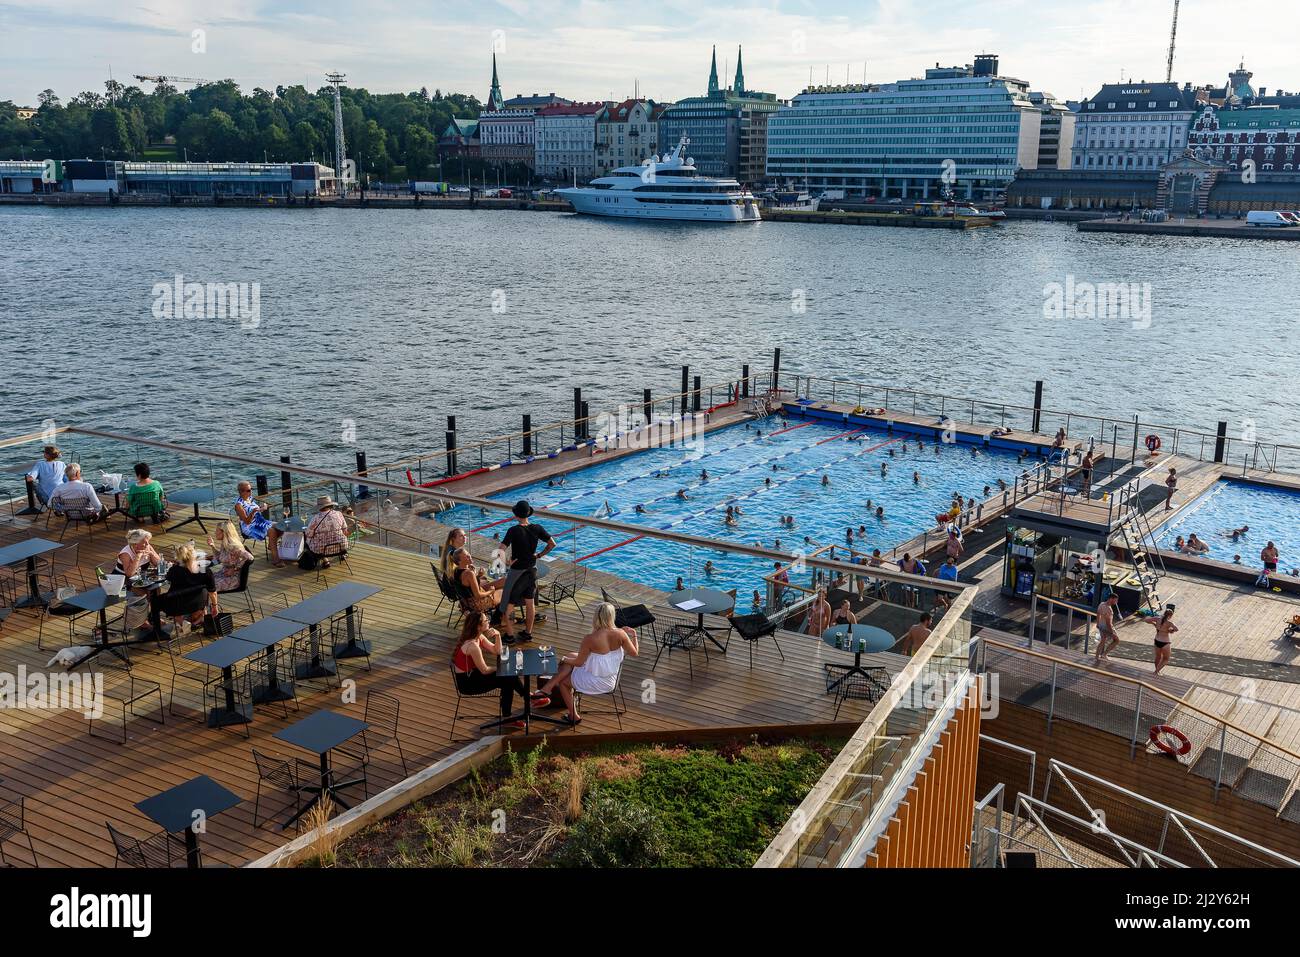 Piscina de mar de Alas, personas que se bañan en la piscina integrada en la cuenca del puerto, Helsinki, Finlandia Foto de stock